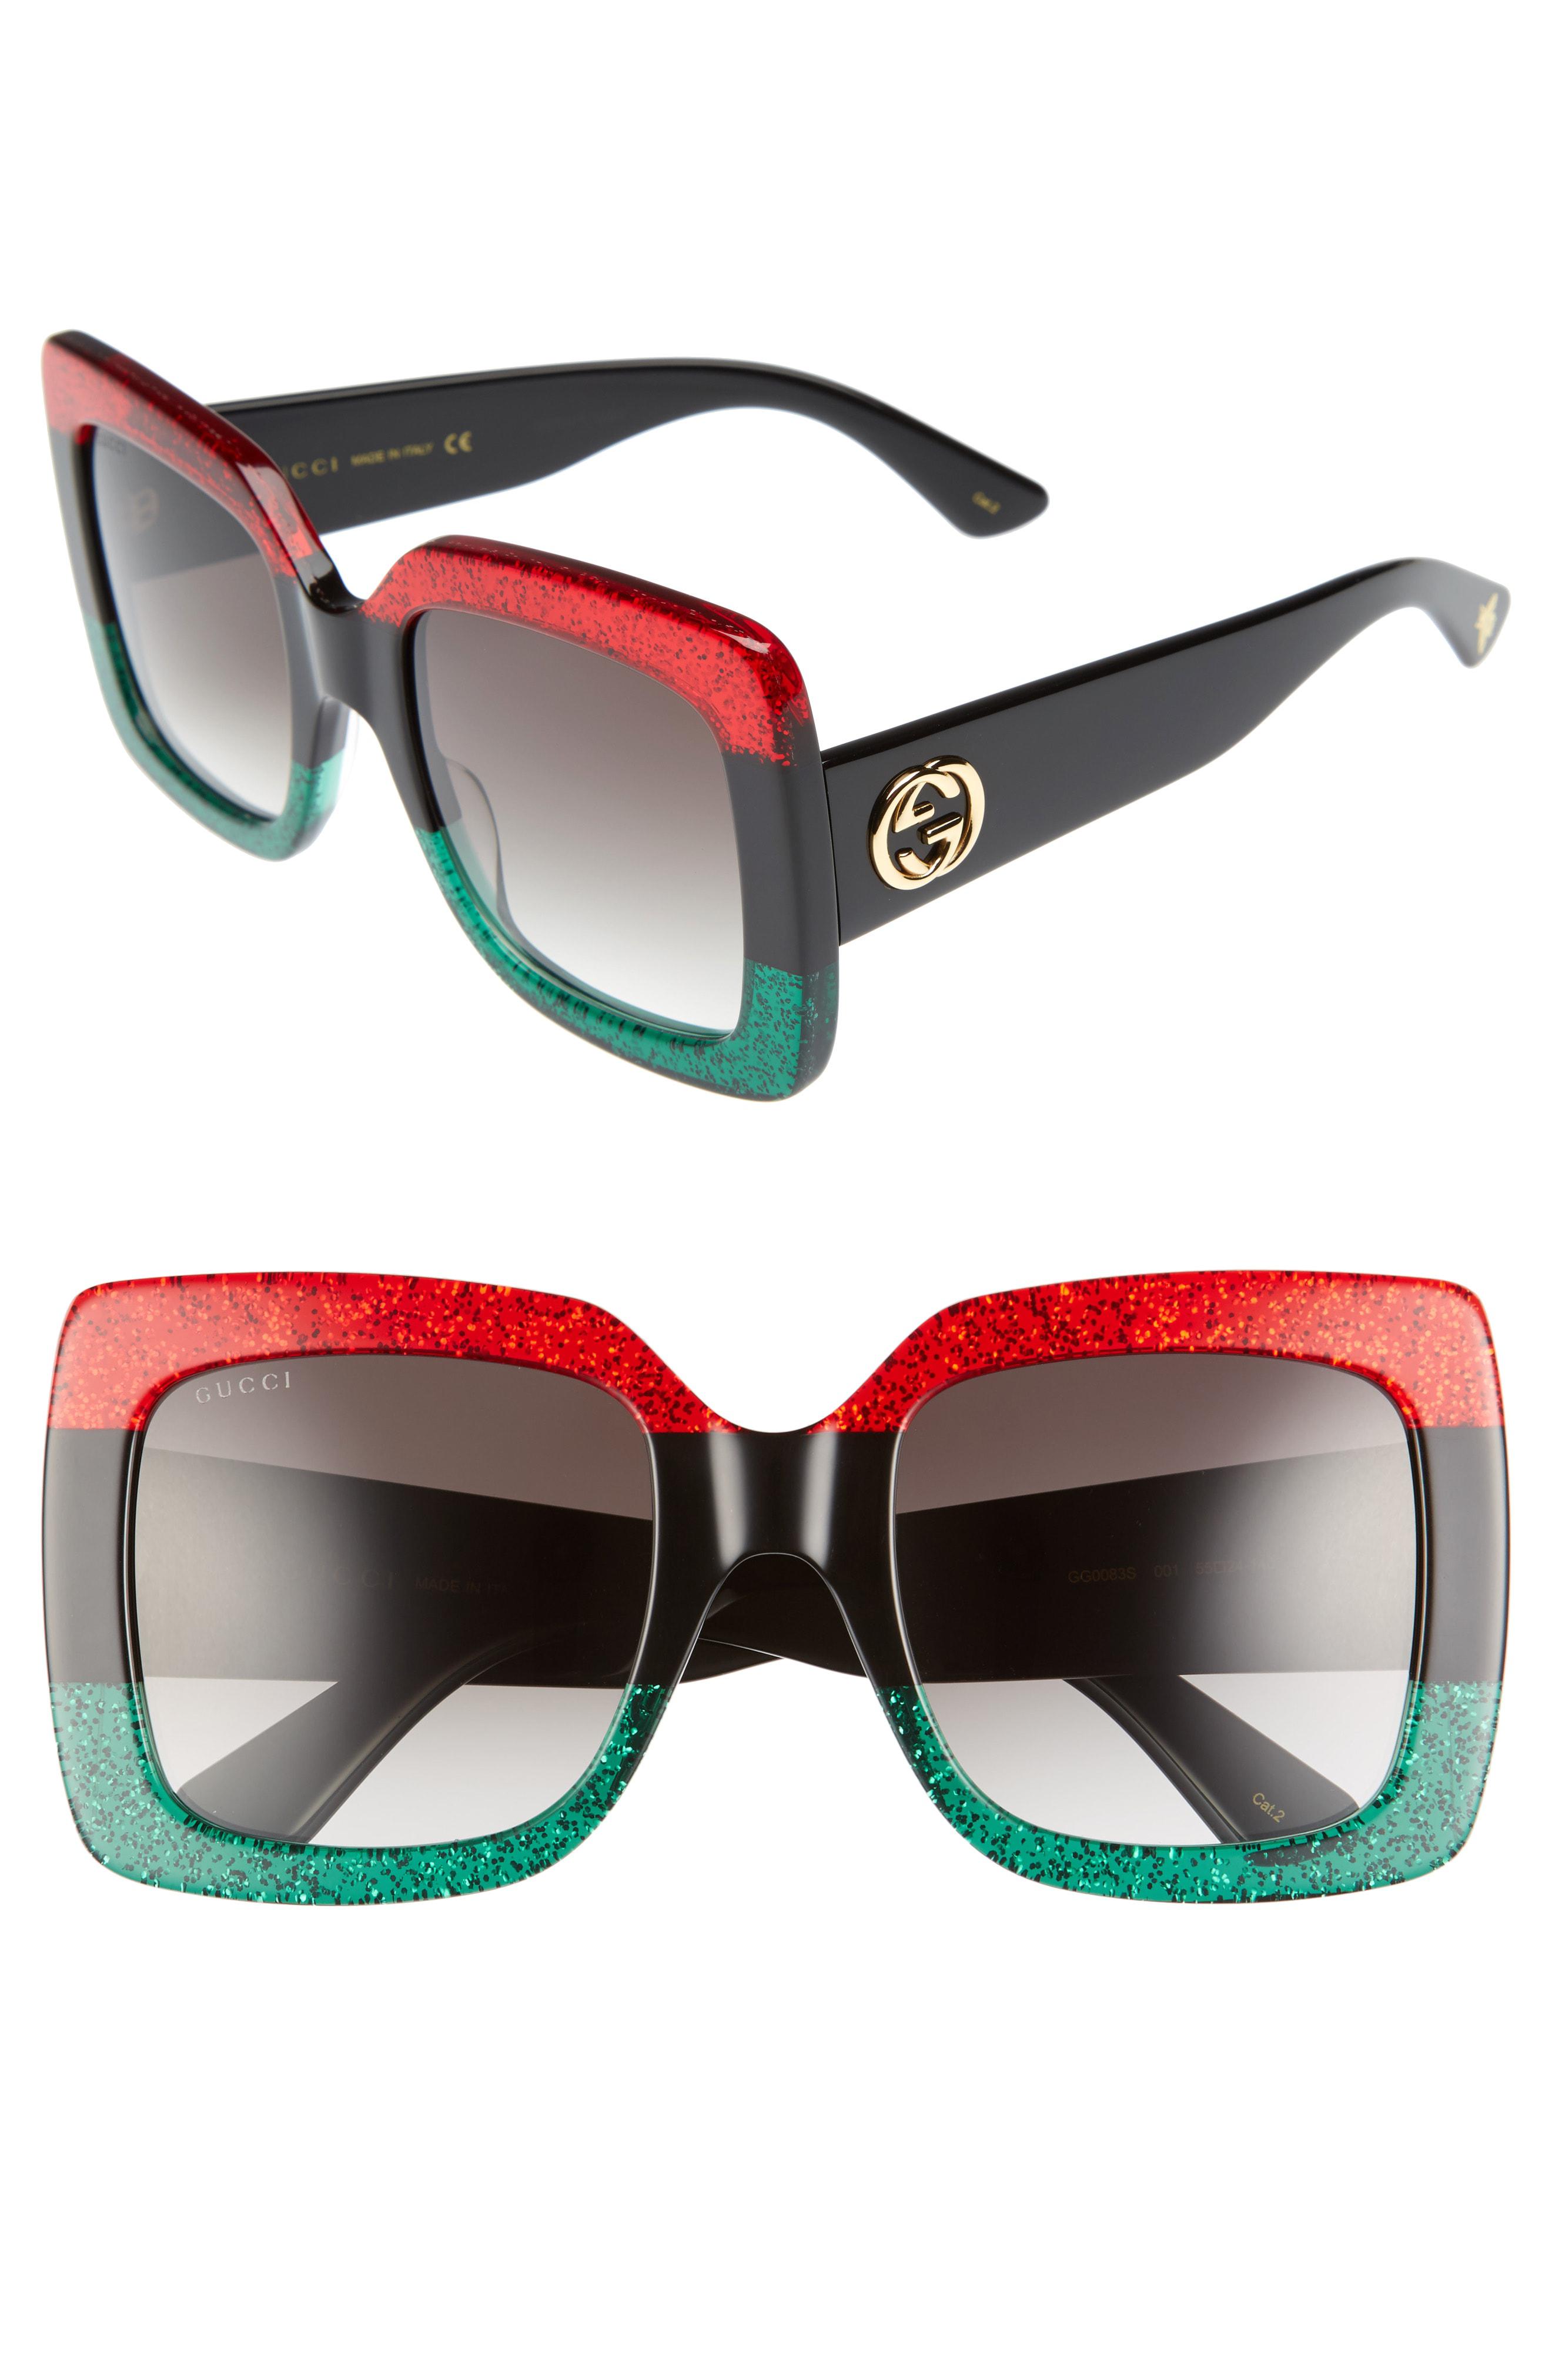 Lyst - Gucci 55mm Square Sunglasses